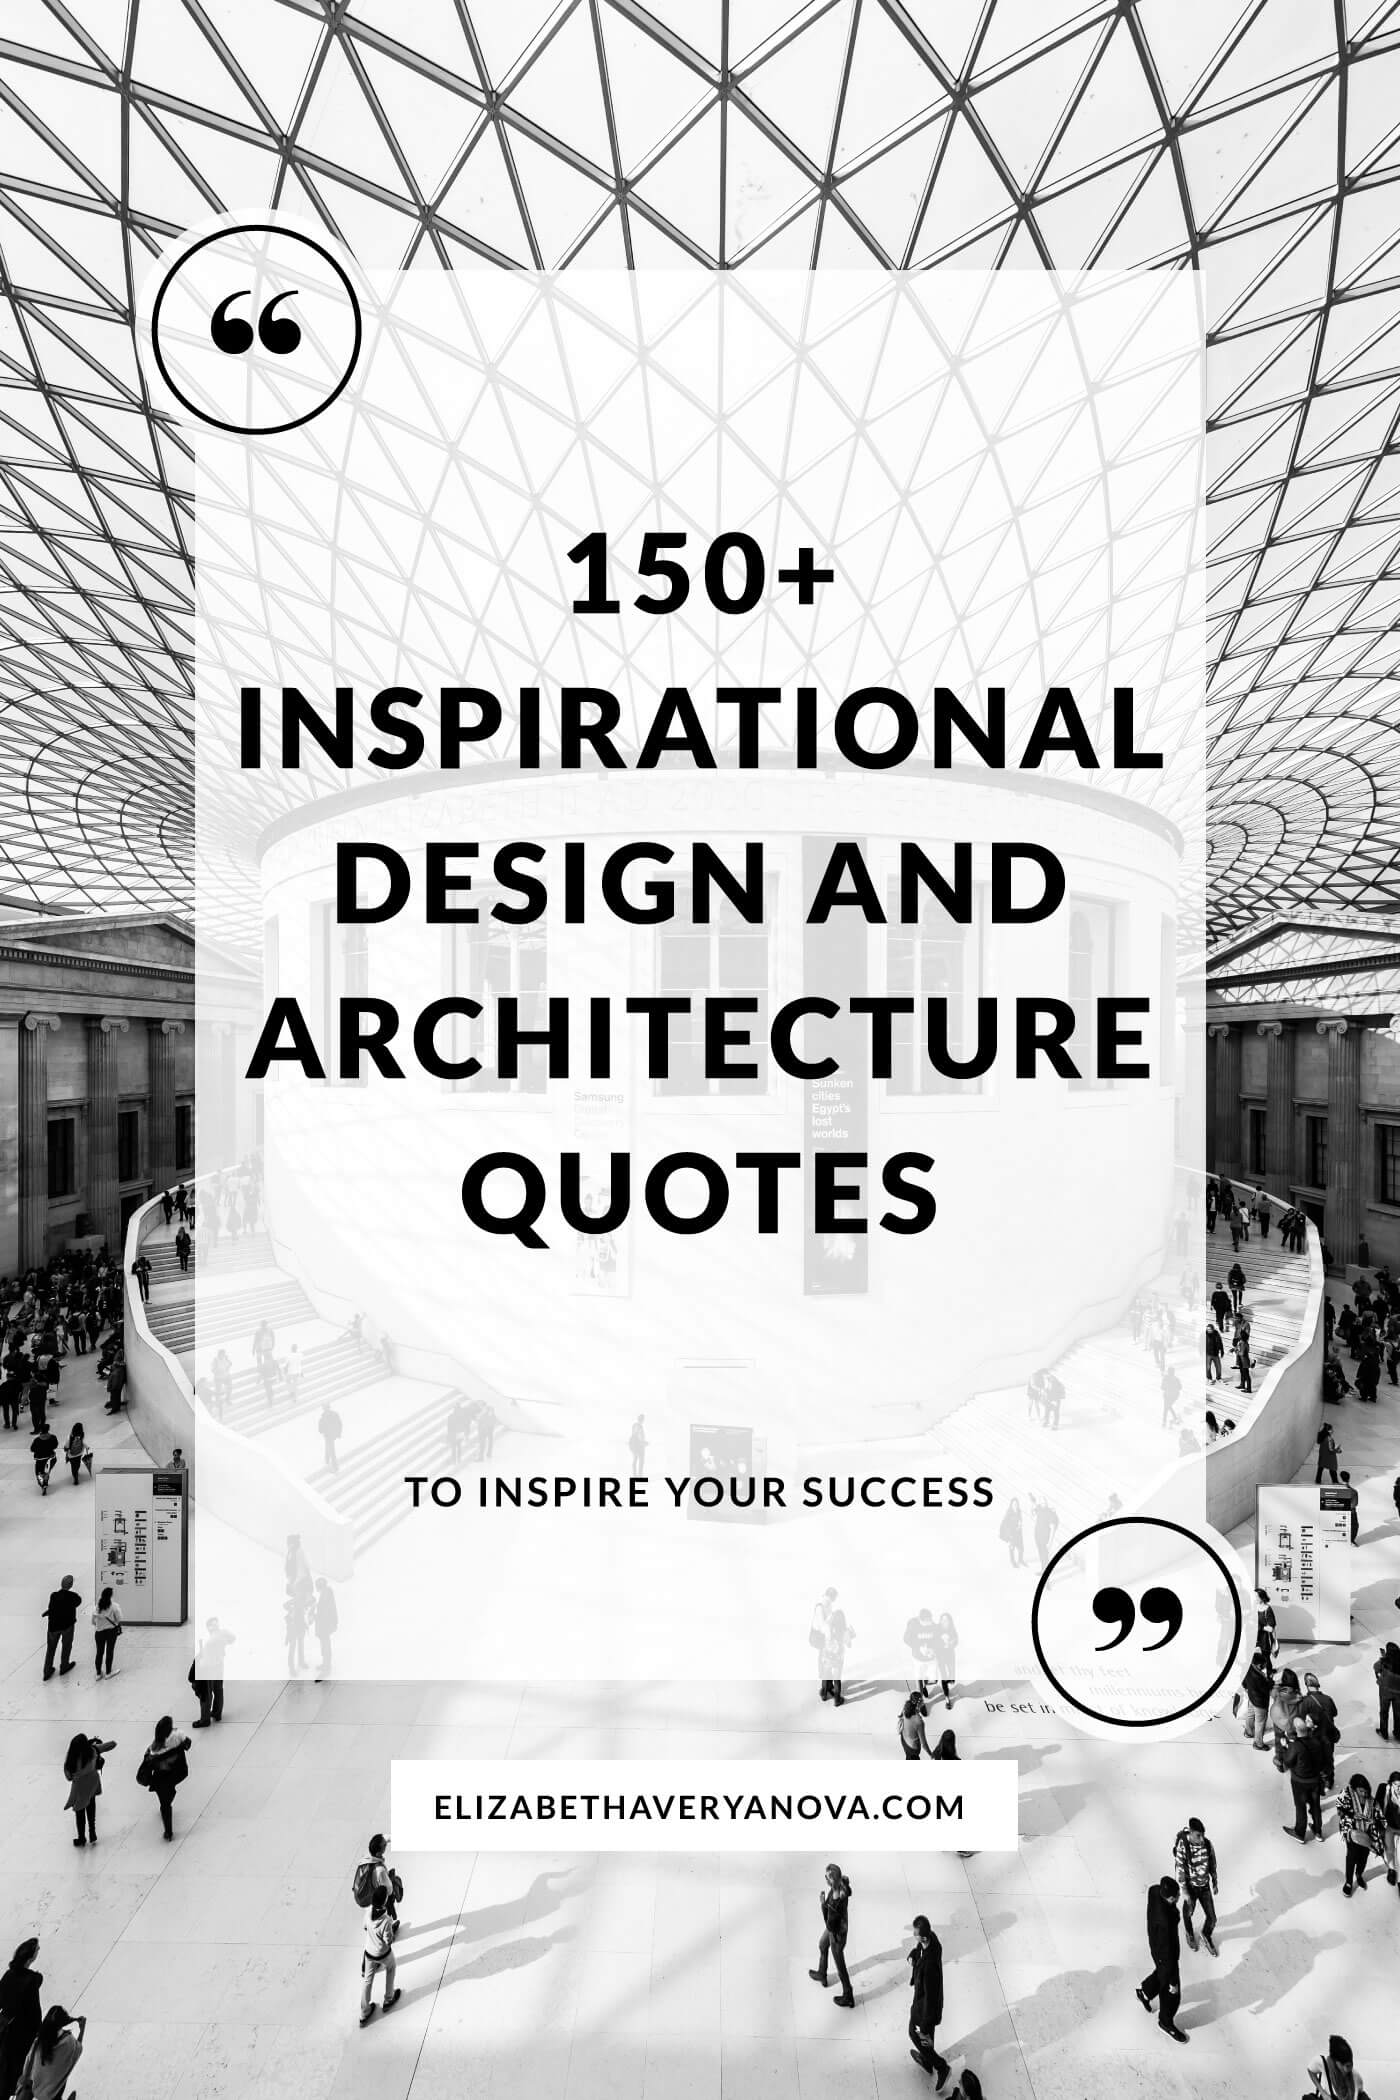 Inspirational-Design-And-Architecture-Quotes-BW-Elizabeth-Averyanova